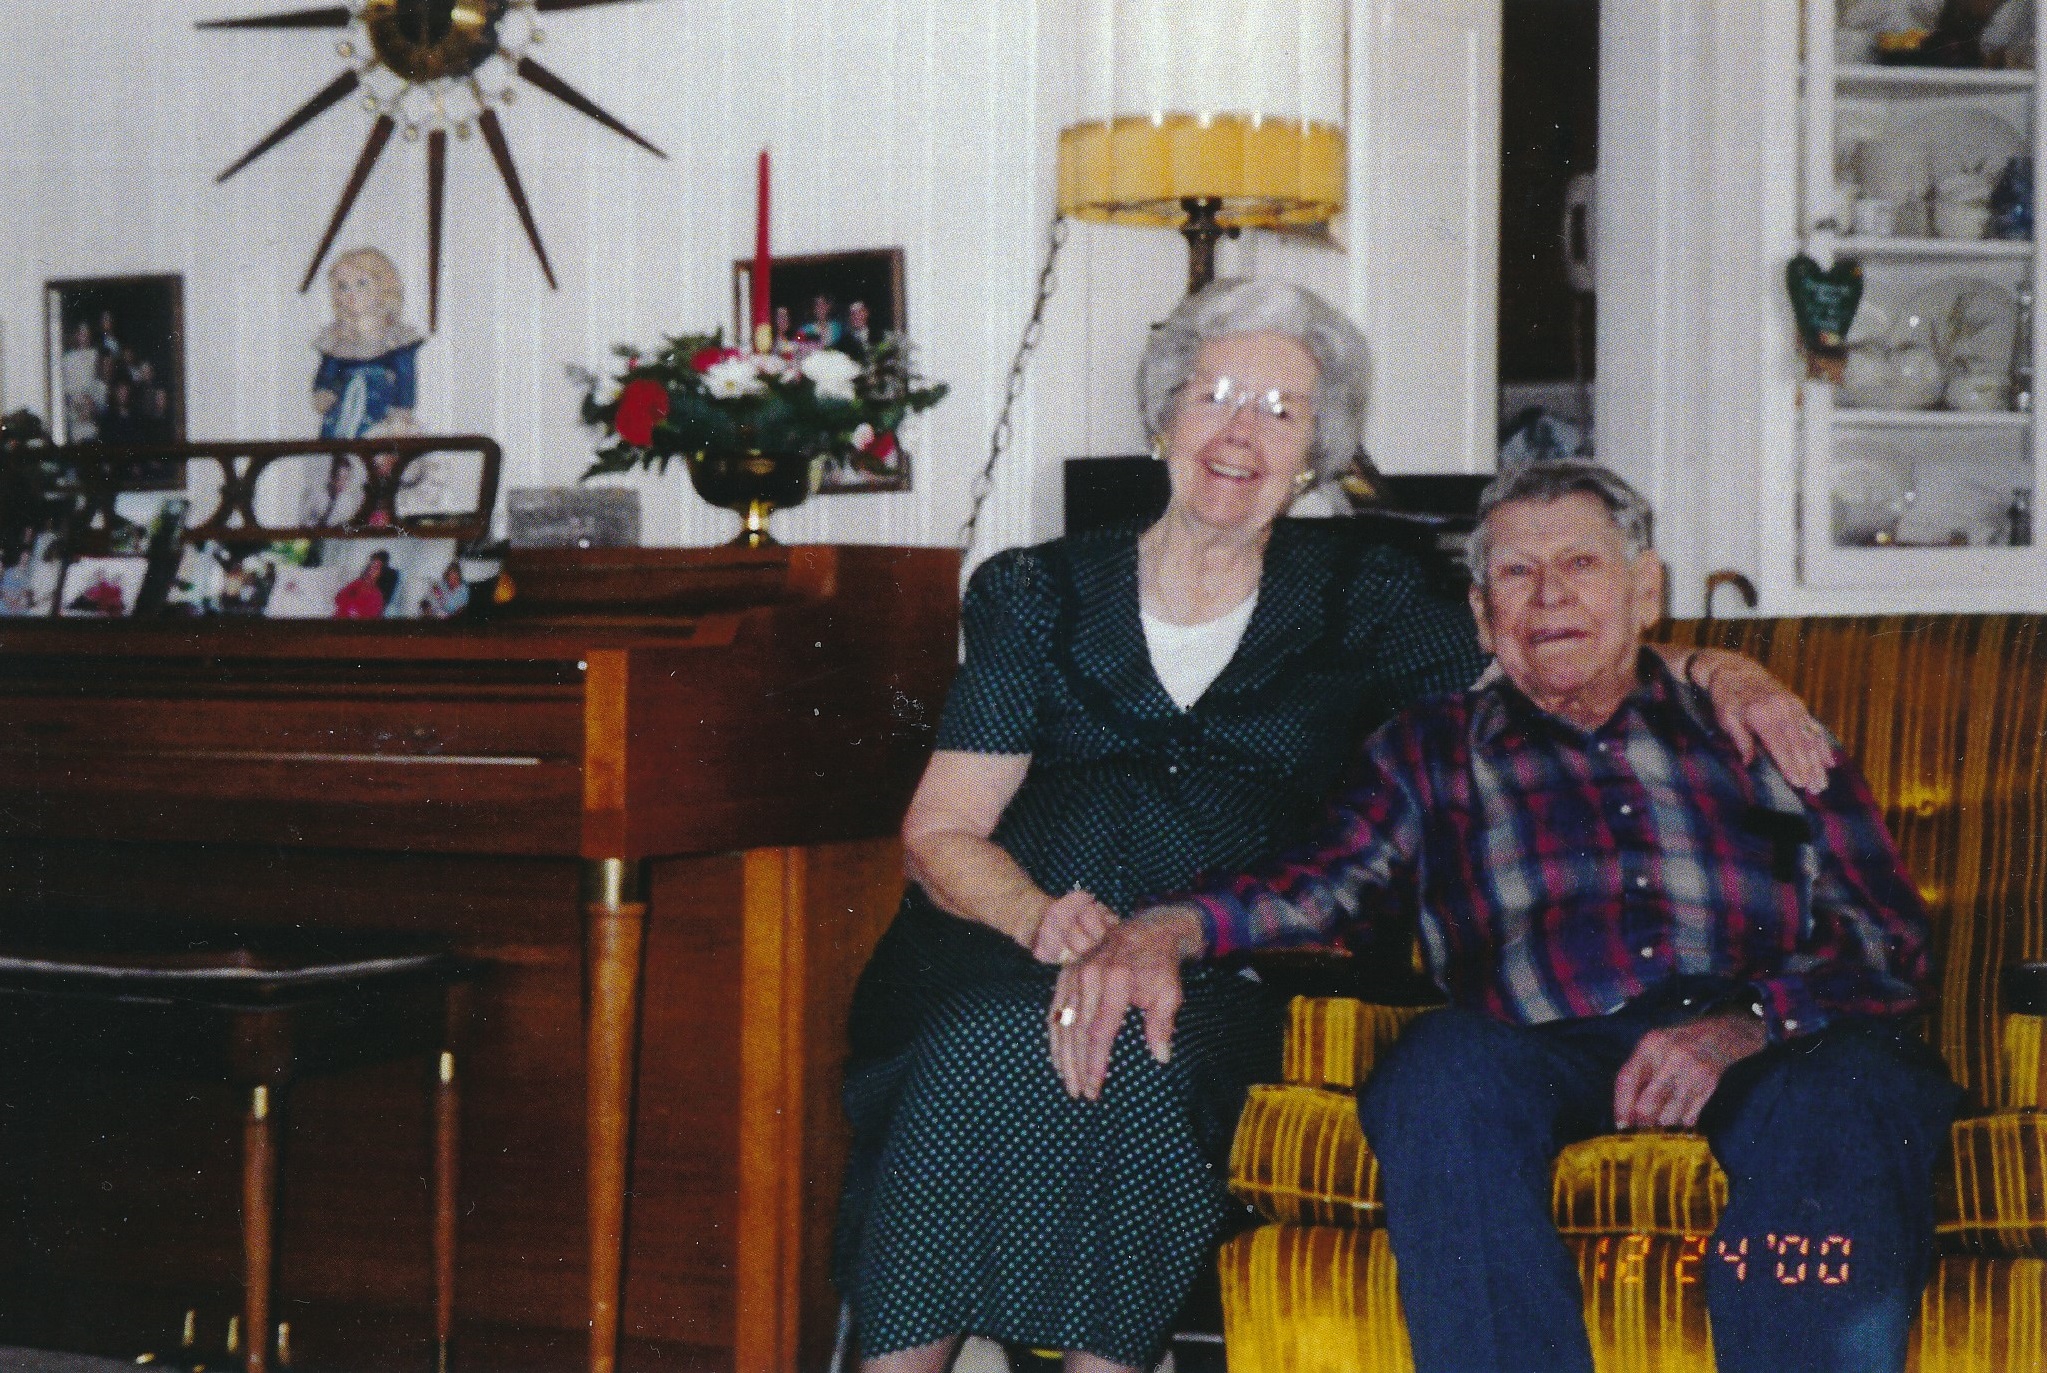 Elgin & Vivian Graff on December 24, 2000